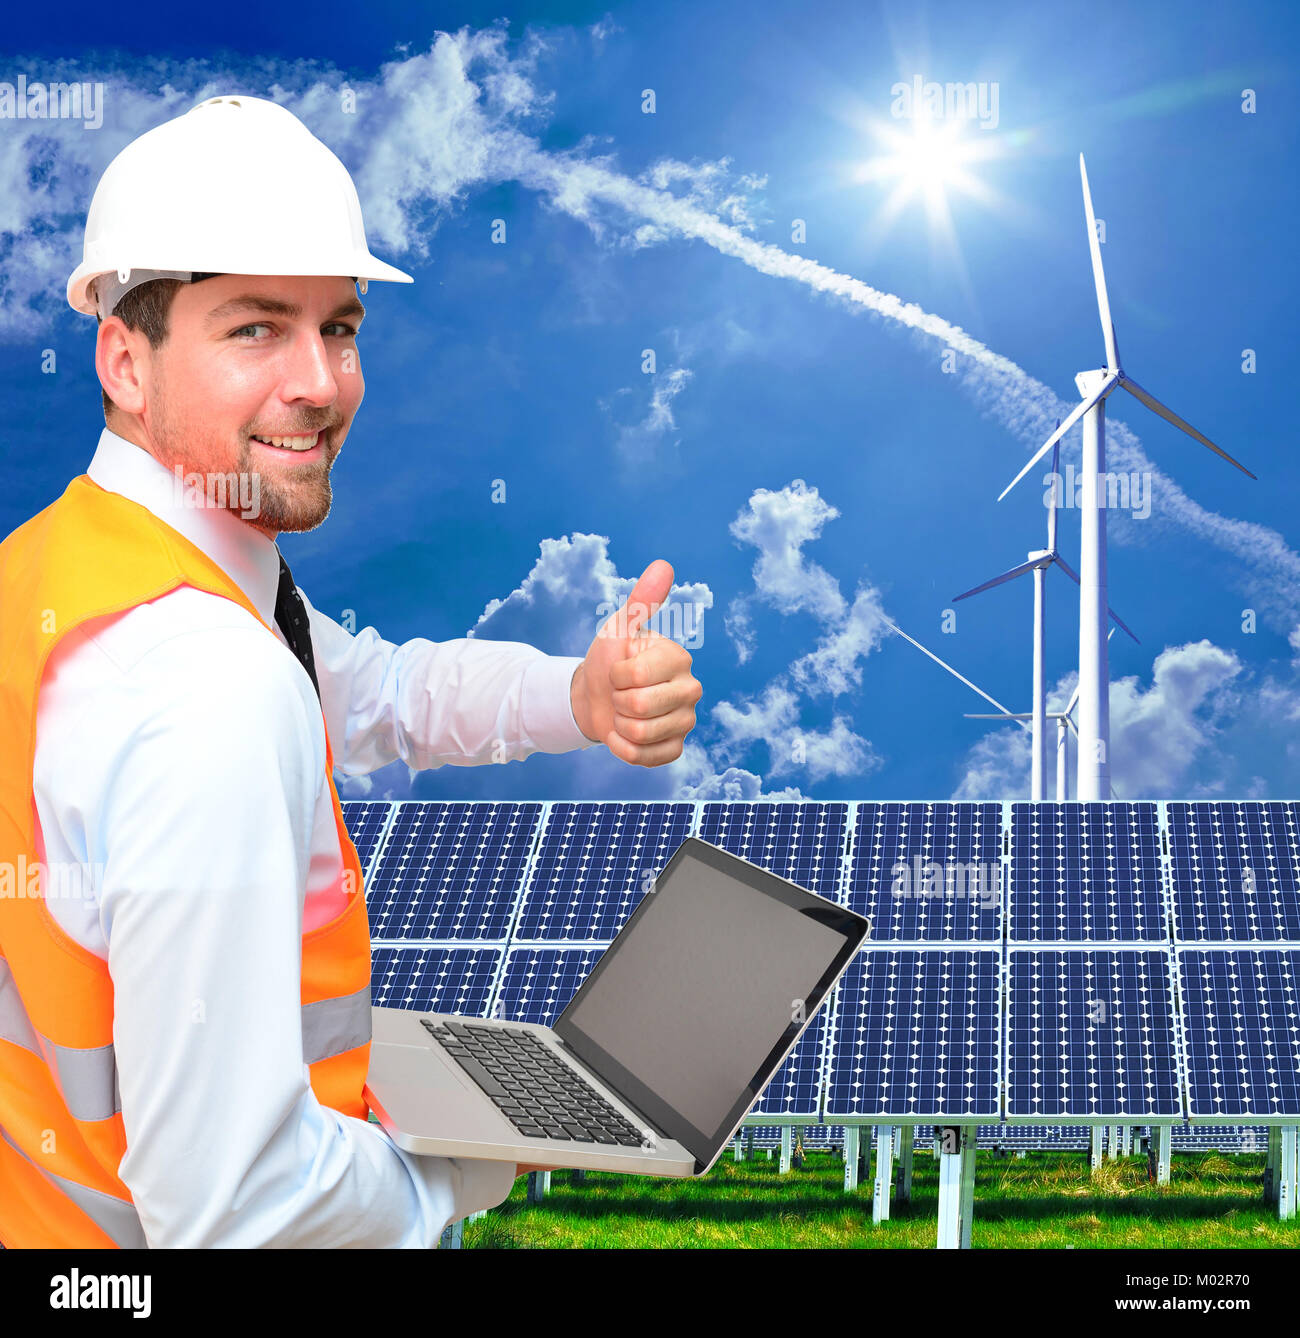 Ingenieur arbeitet in der Energiewirtschaft - Umweltfreundliche Energieerzeugung mit alternativen Energien wie Wind- und Solarenergie Stockfoto